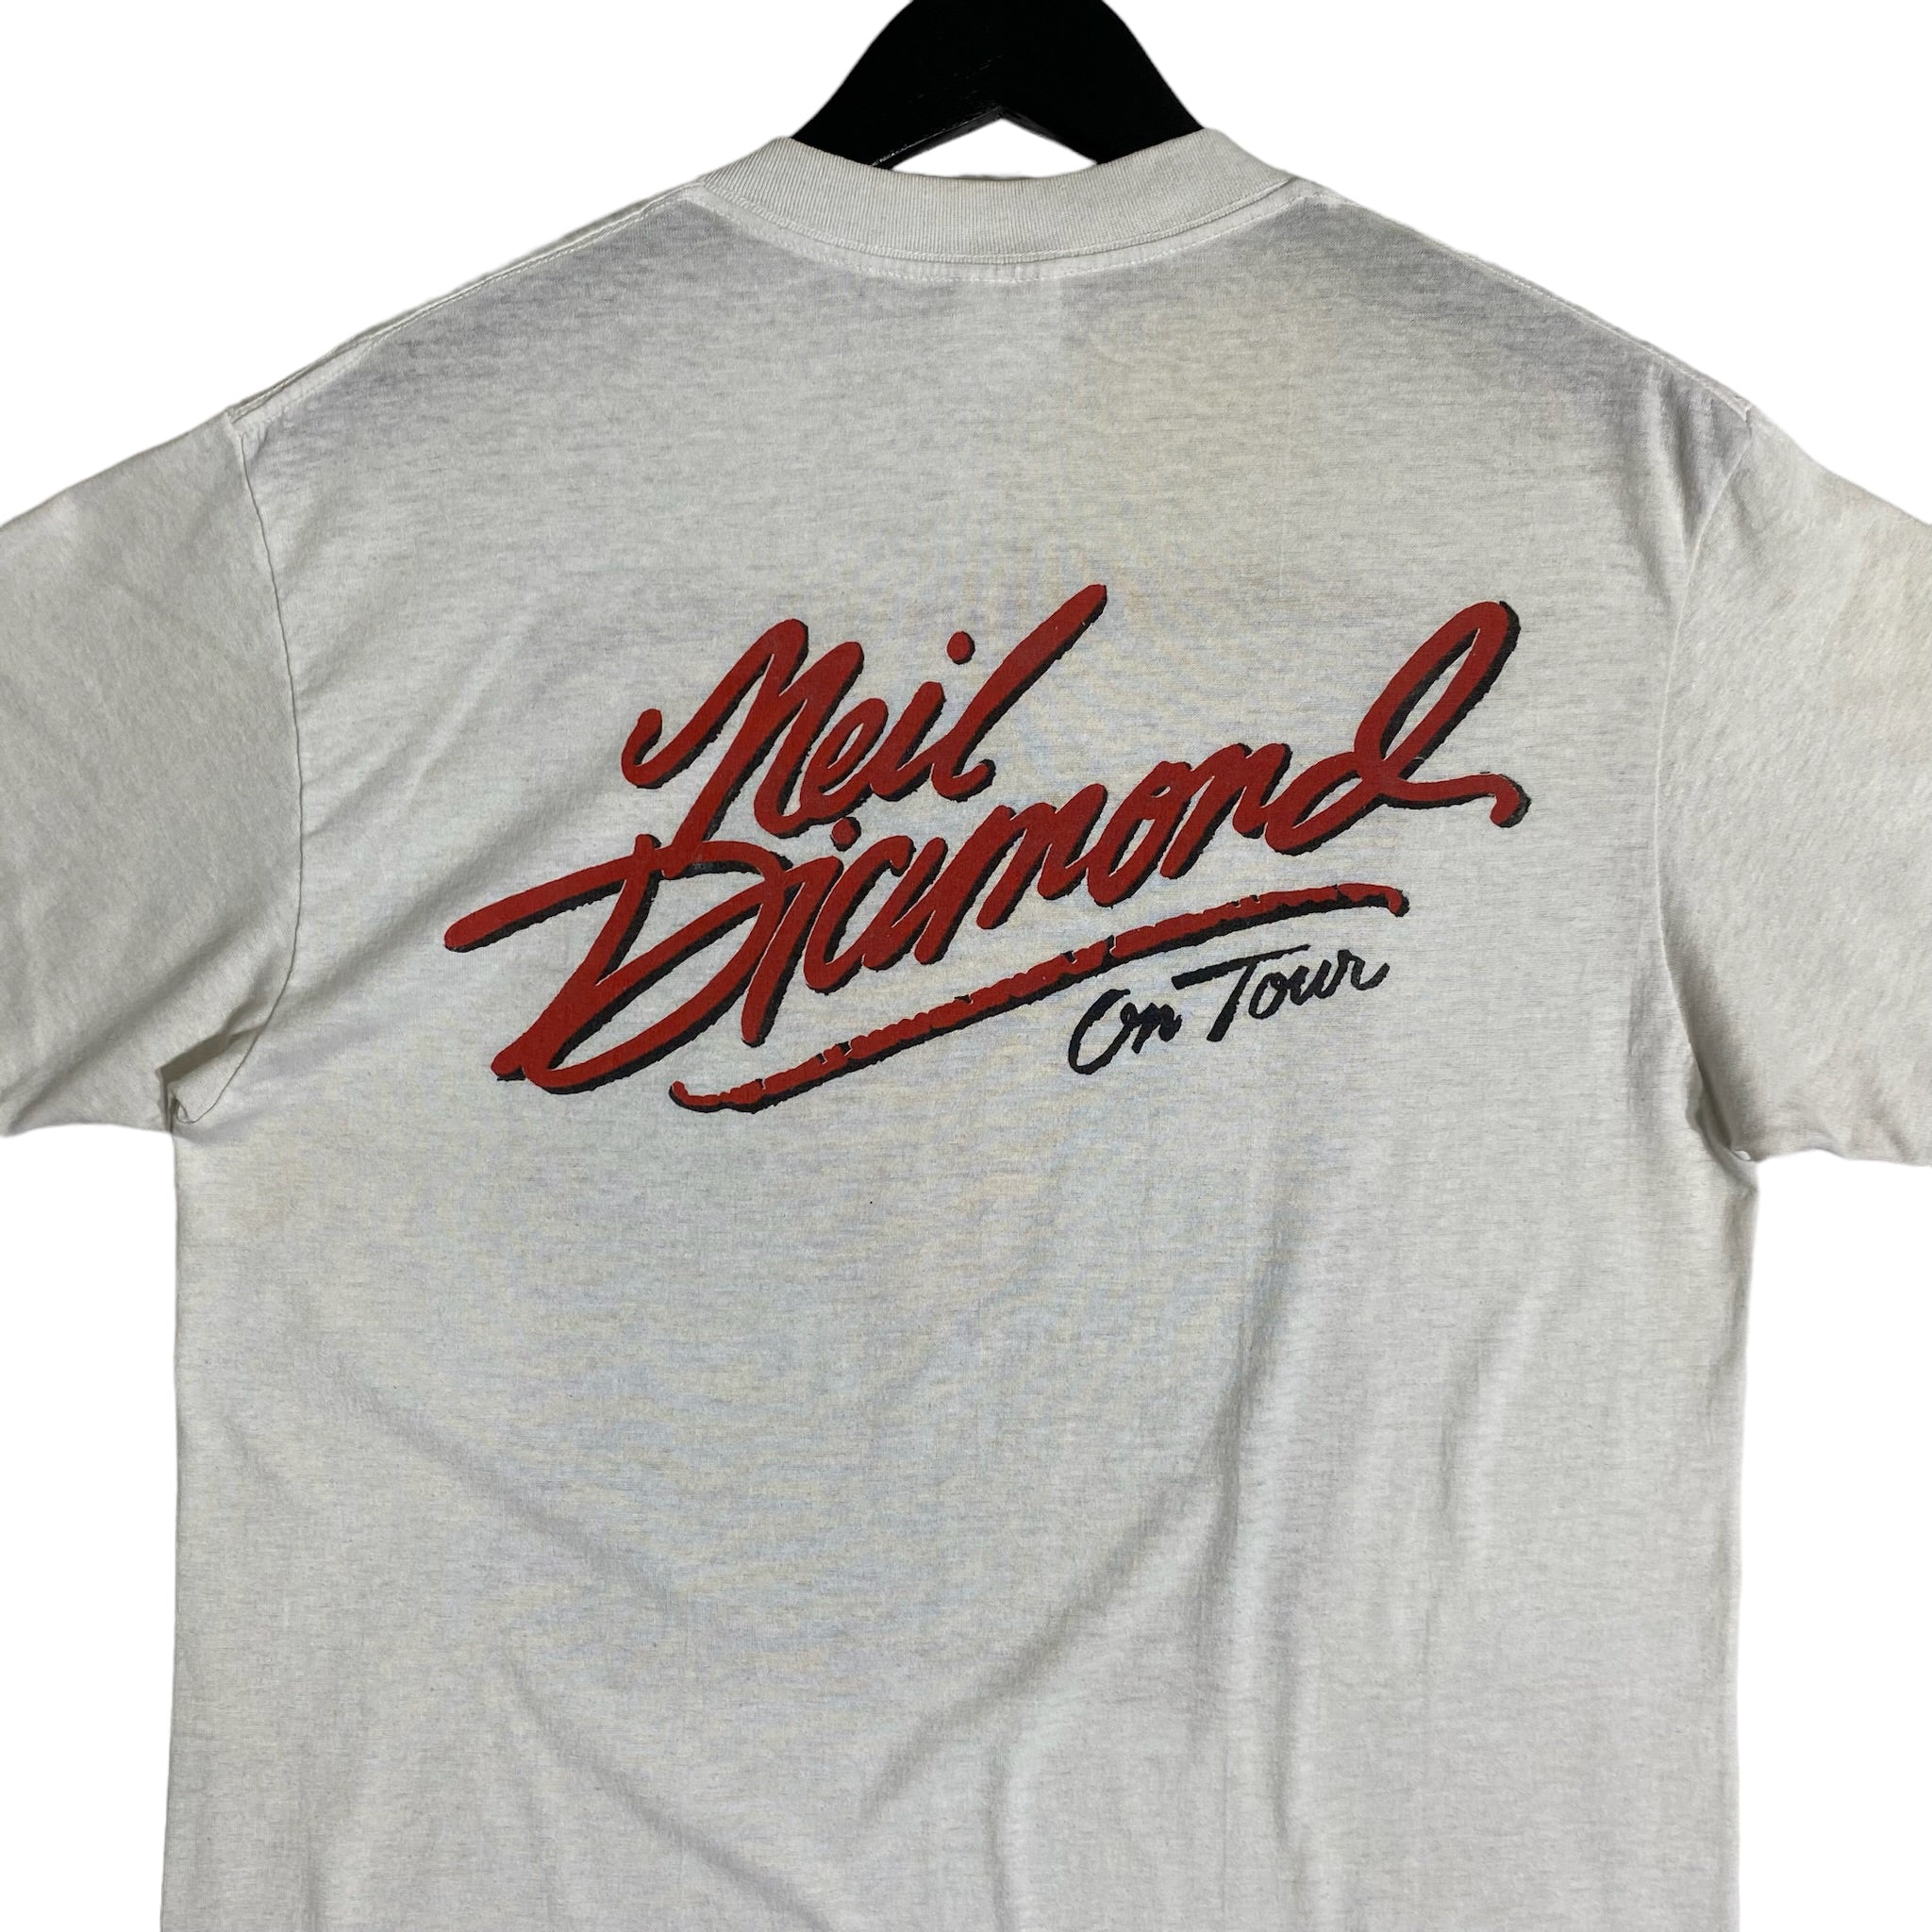 Vintage Neil Diamond On Tour Tee 80s/90s